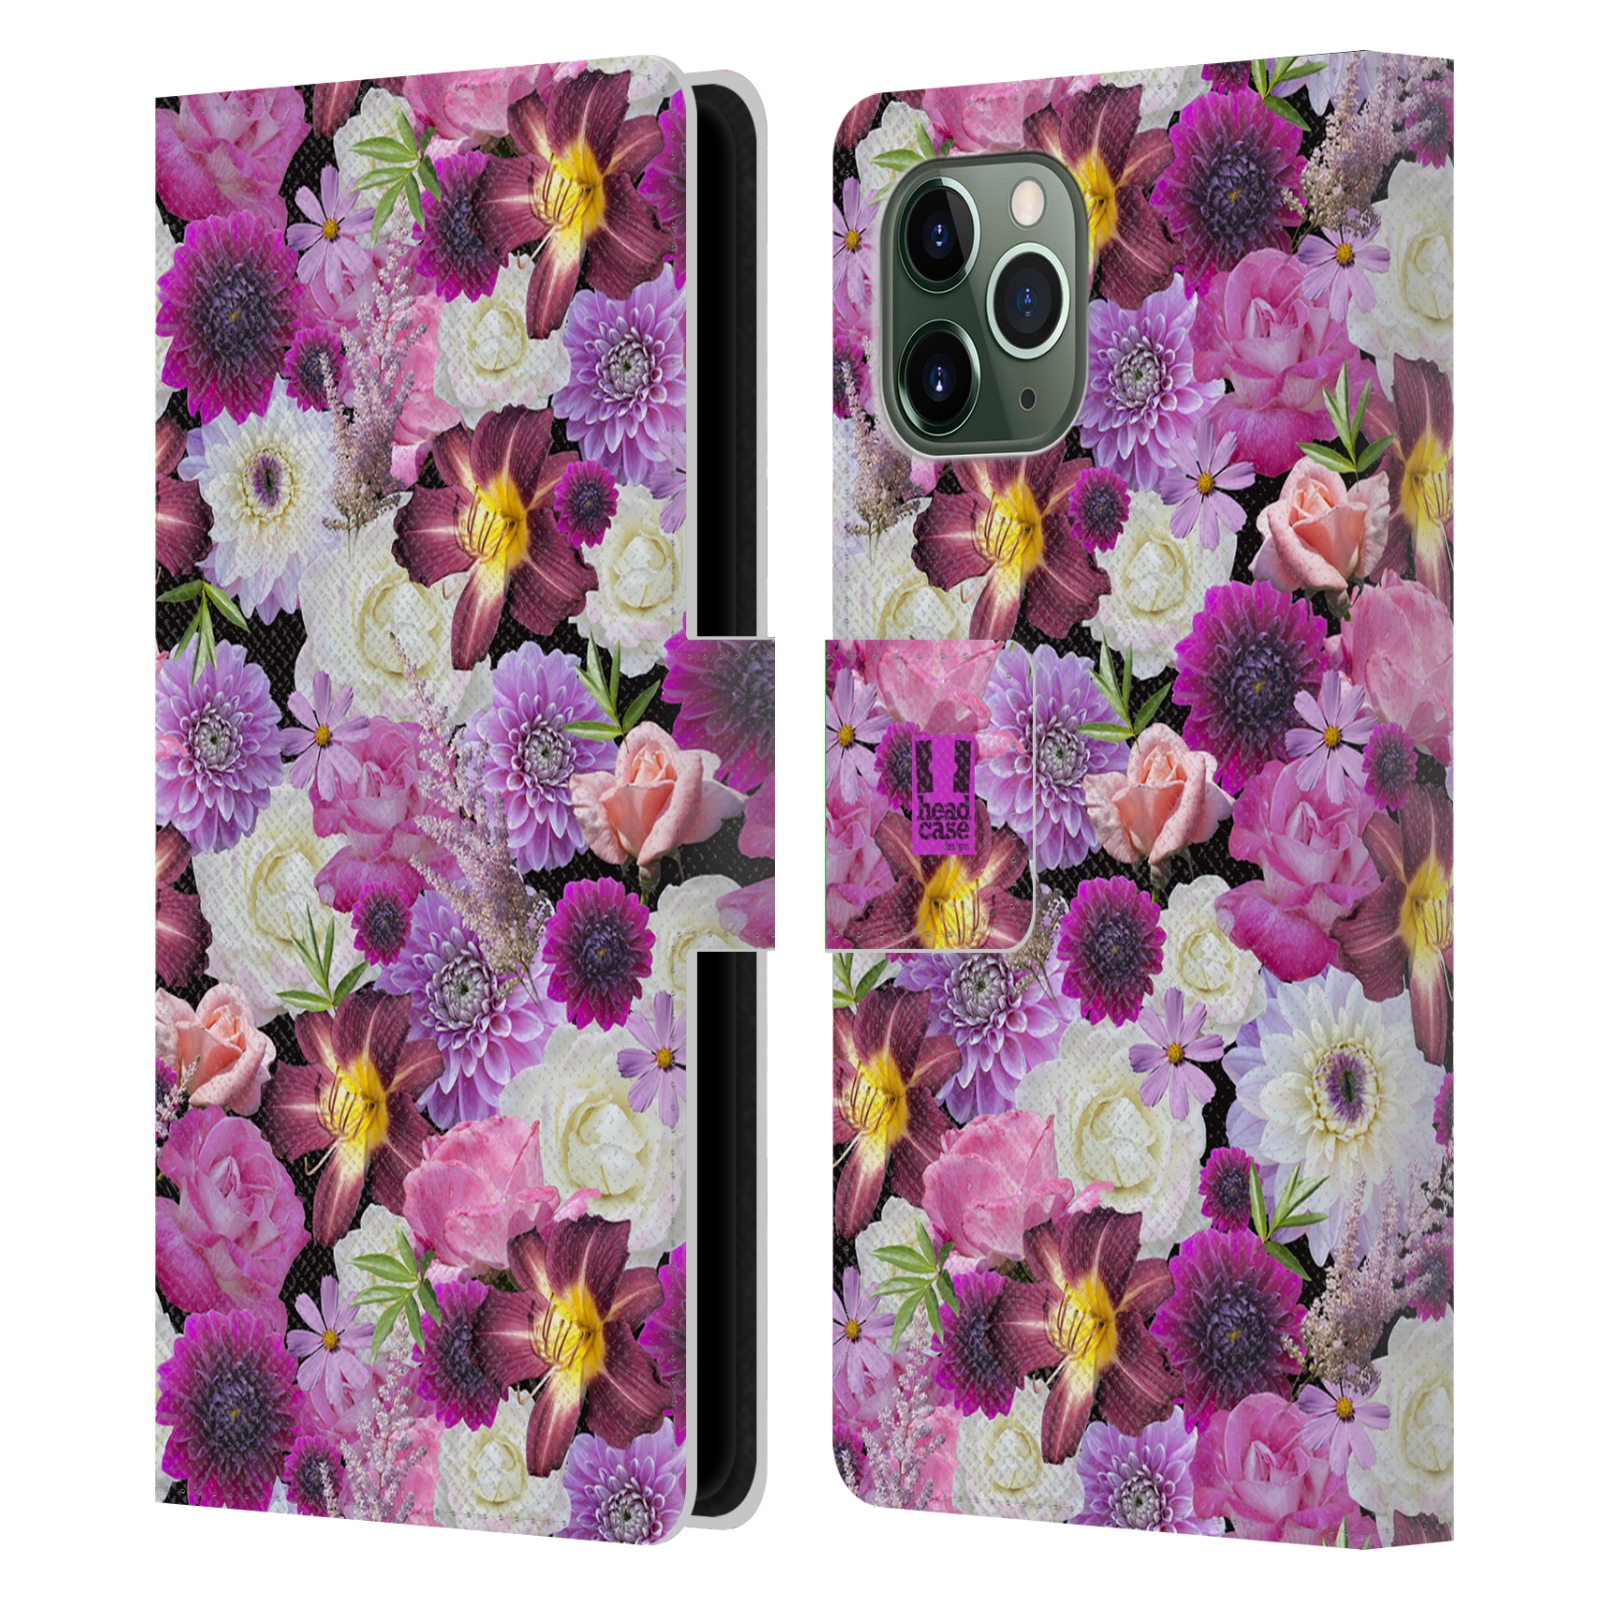 Pouzdro na mobil Apple Iphone 11 PRO květy foto fialová a bílá